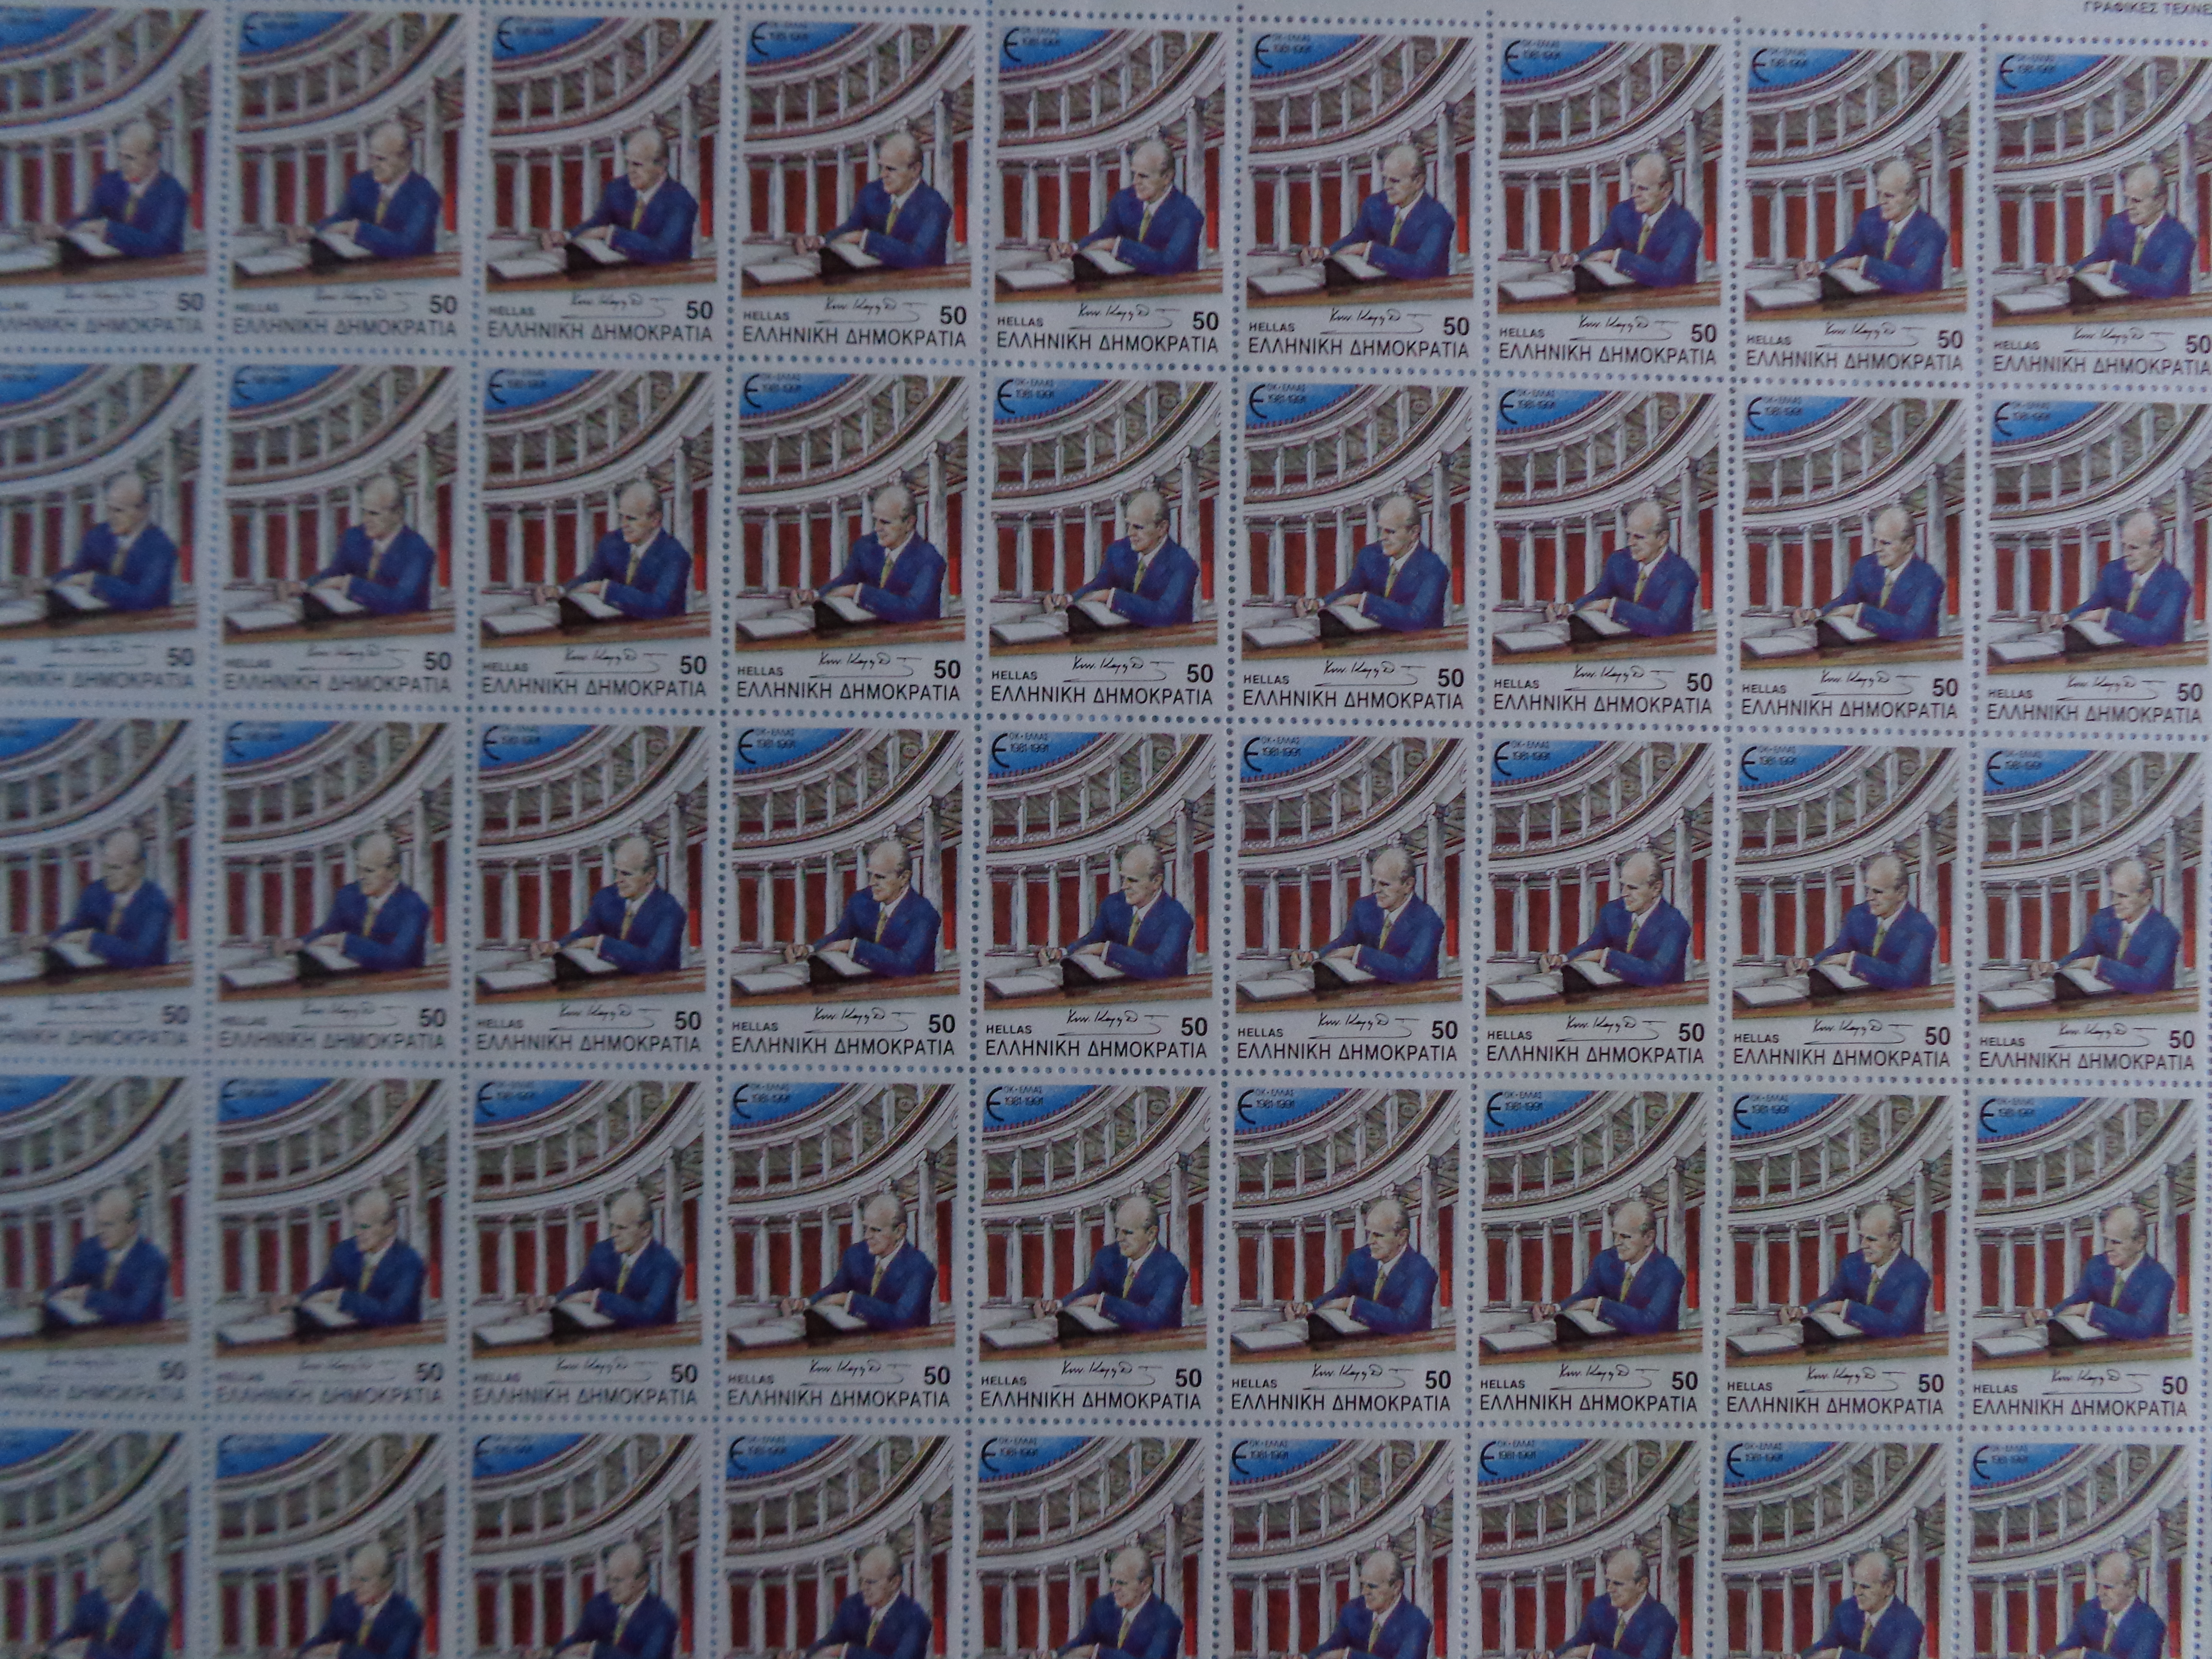 ΓΡΑΜΜΑΤΟΣΗΜΑ  ΕΛΛΗΝΙΚΑ ΤΑΧΥΔΡΟΜΕΙΑ   Αναμνηστική σειρά γραμματοσήμων 10 χρόνια από την ένταξη της Ελλάδος στην ΕΟΚ 